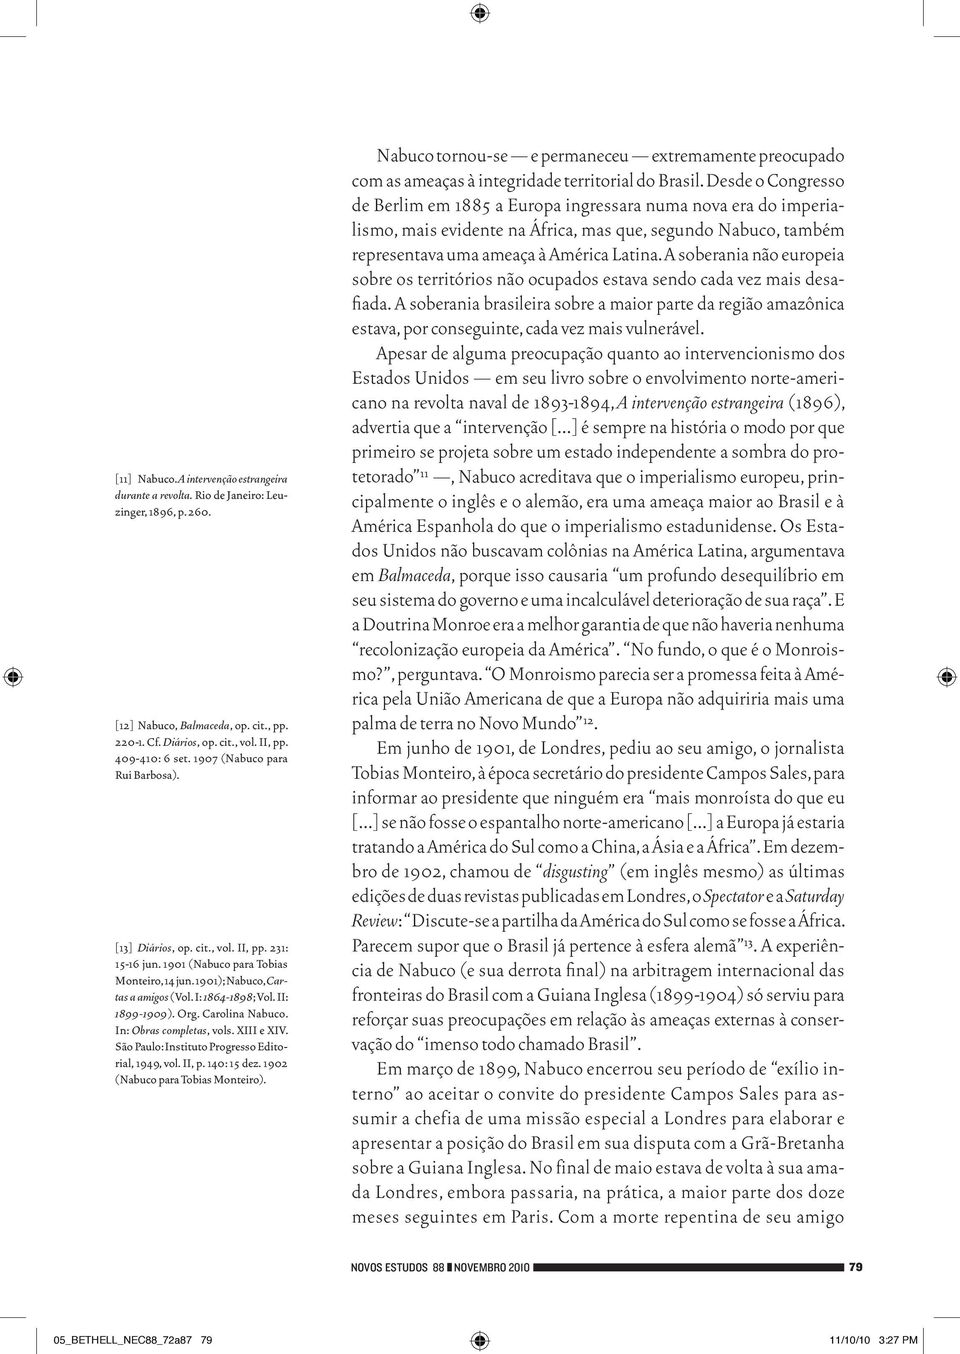 Org. Carolina Nabuco. In: Obras completas, vols. XIII e XIV. São Paulo: Instituto Progresso Editorial, 1949, vol. II, p. 140: 15 dez. 1902 (Nabuco para Tobias Monteiro).